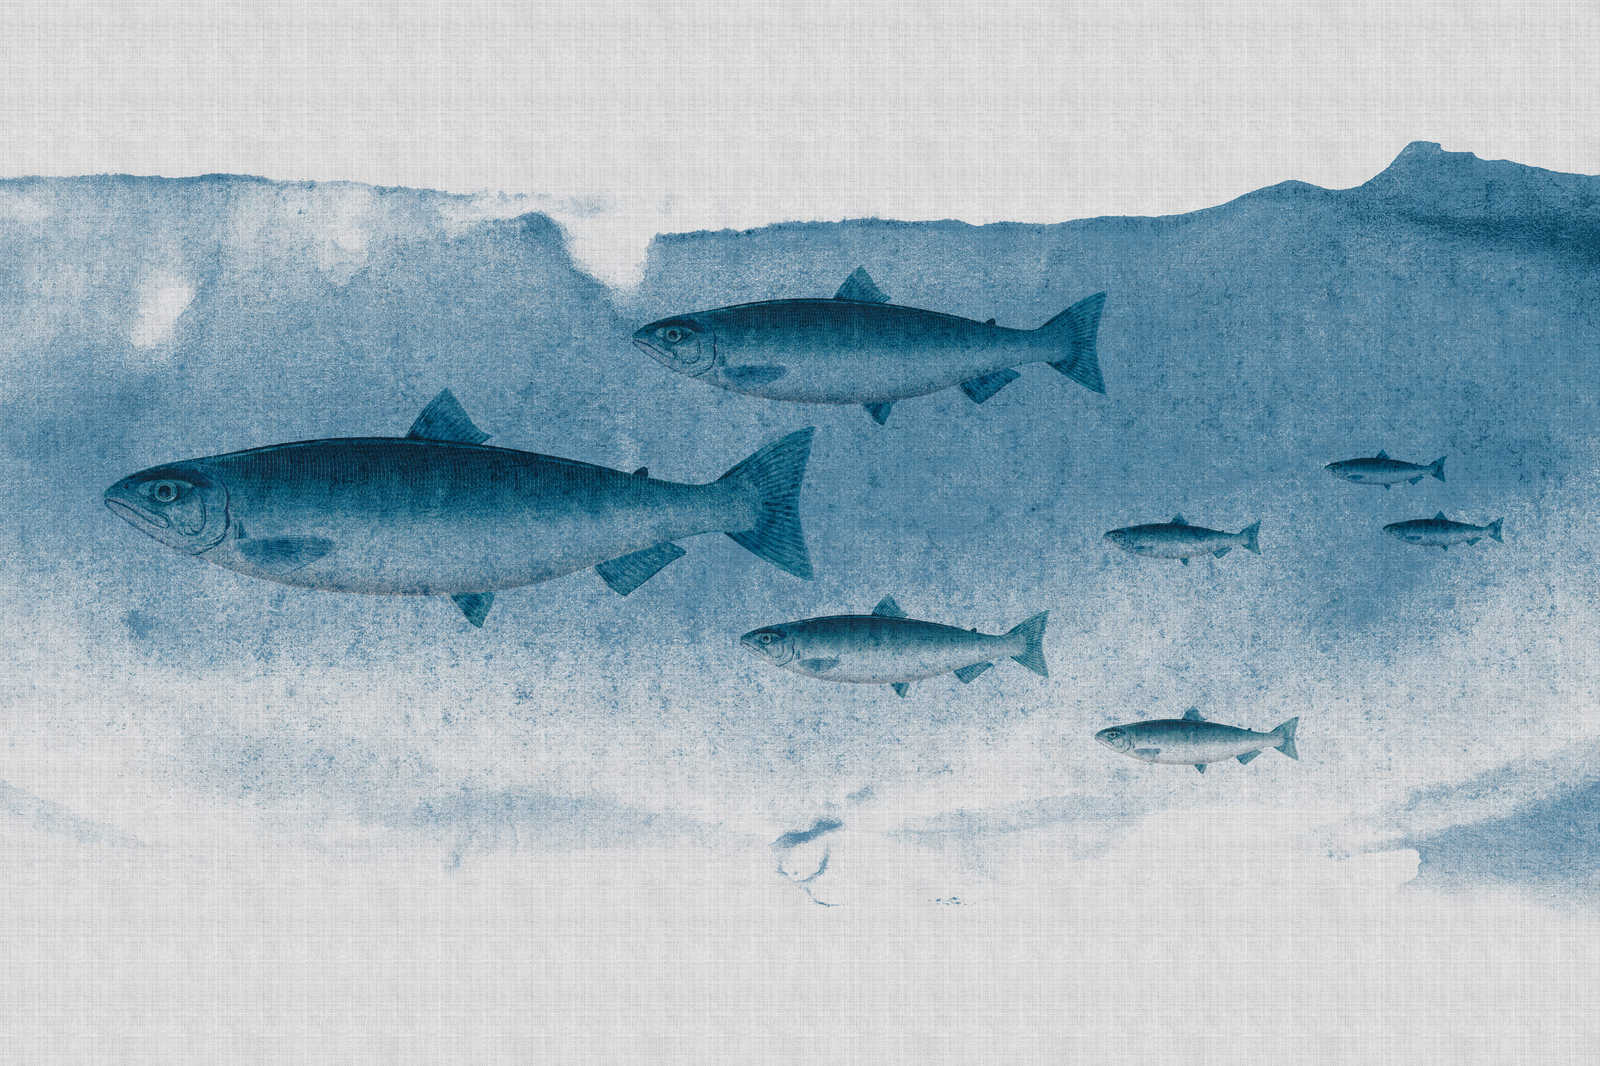             Into the blue 1 - Aquarel vis in blauw als canvas schilderij in natuurlijk linnen structuur - 0.90 m x 0.60 m
        